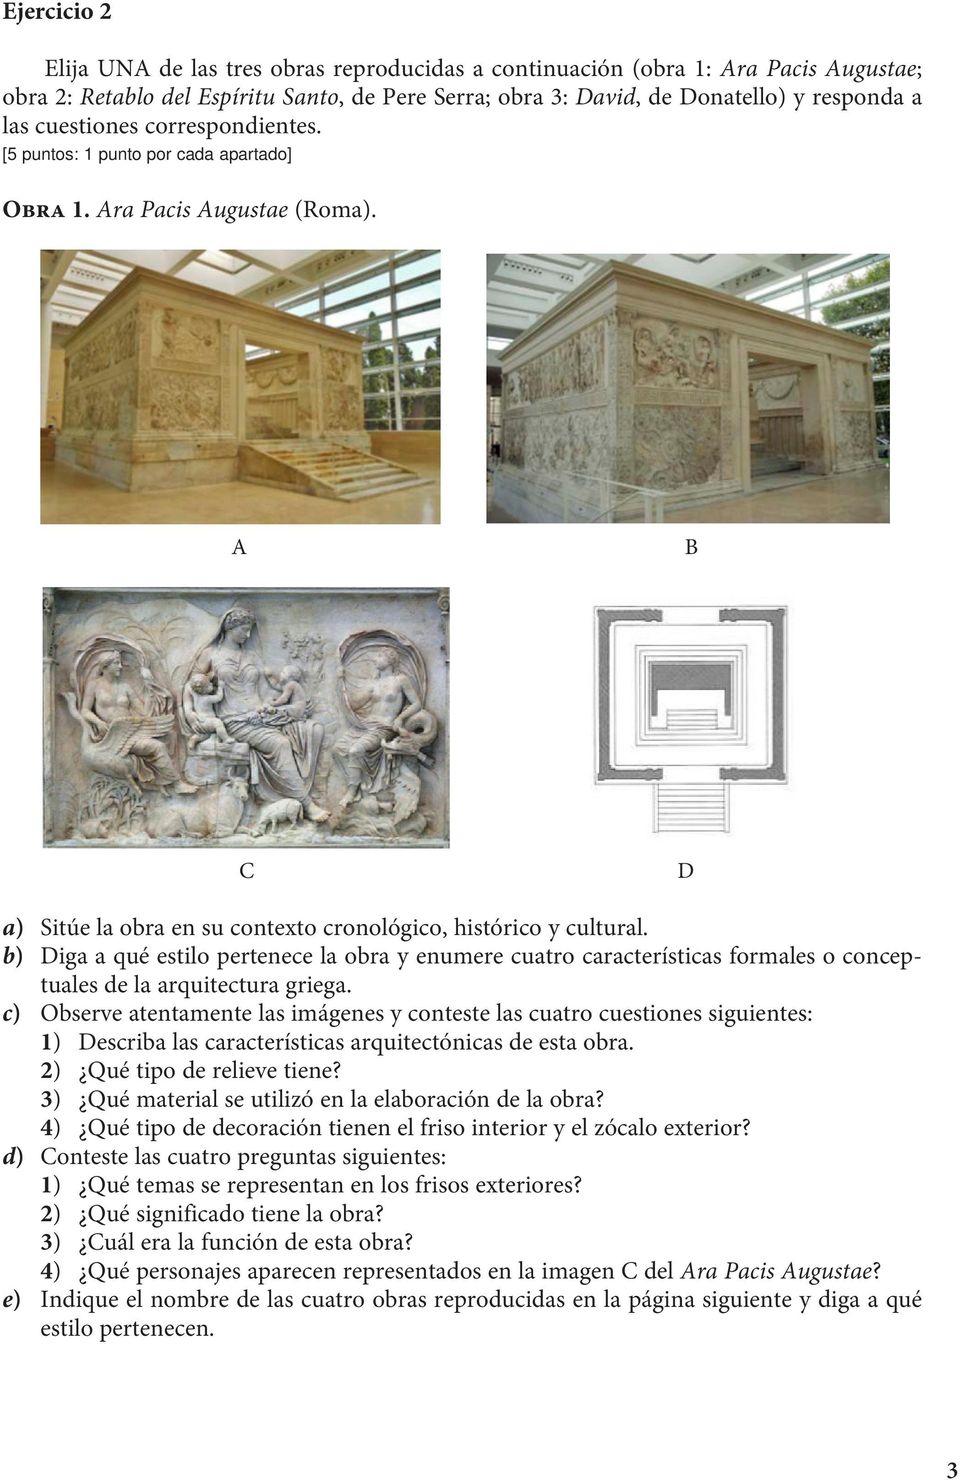 b) Diga a qué estilo pertenece la obra y enumere cuatro características formales o conceptuales de la arquitectura griega.